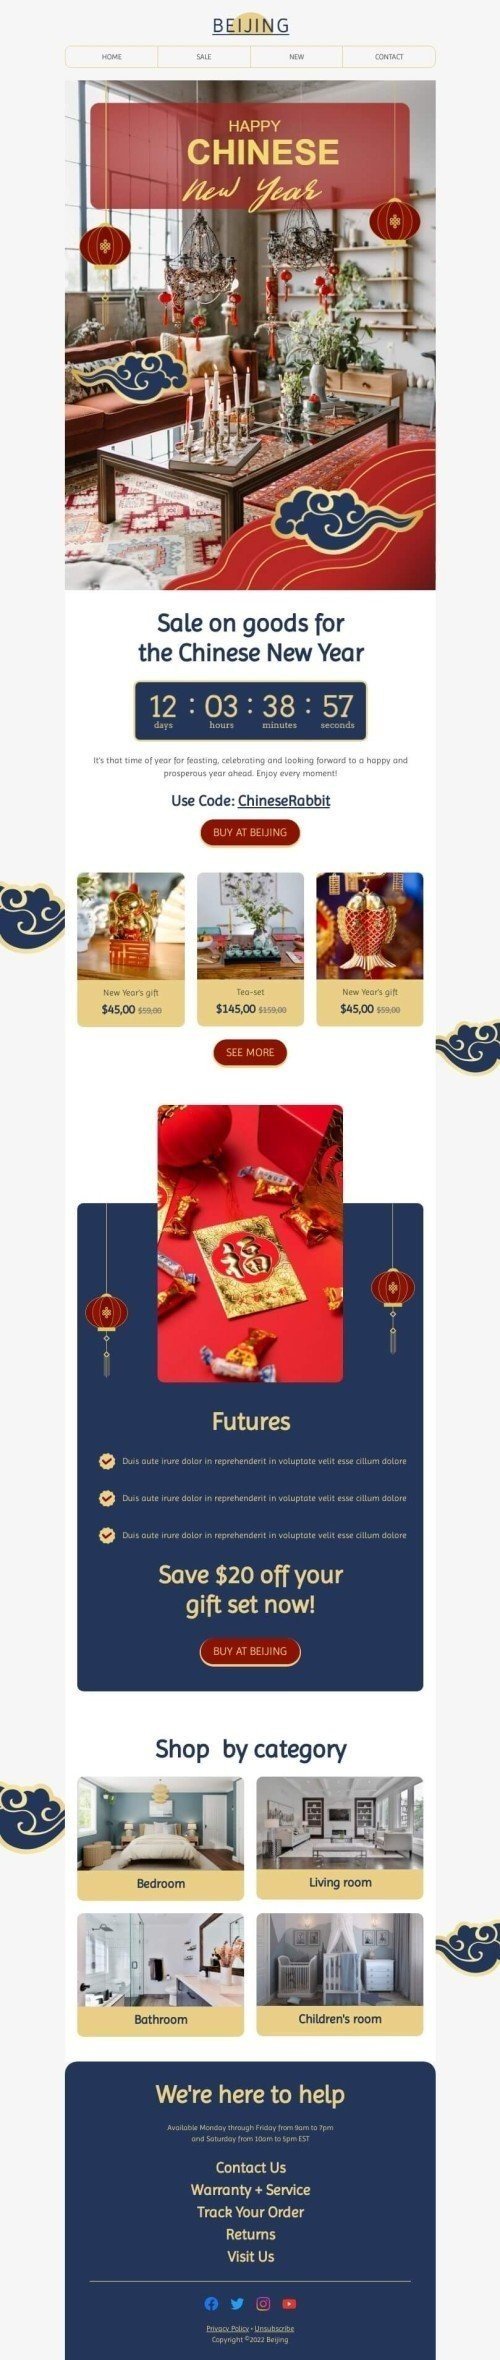 Шаблон письма к празднику китайский Новый год «Чудо китайского Нового года» для индустрии «Мебель, интерьер, декор» дектопный вид